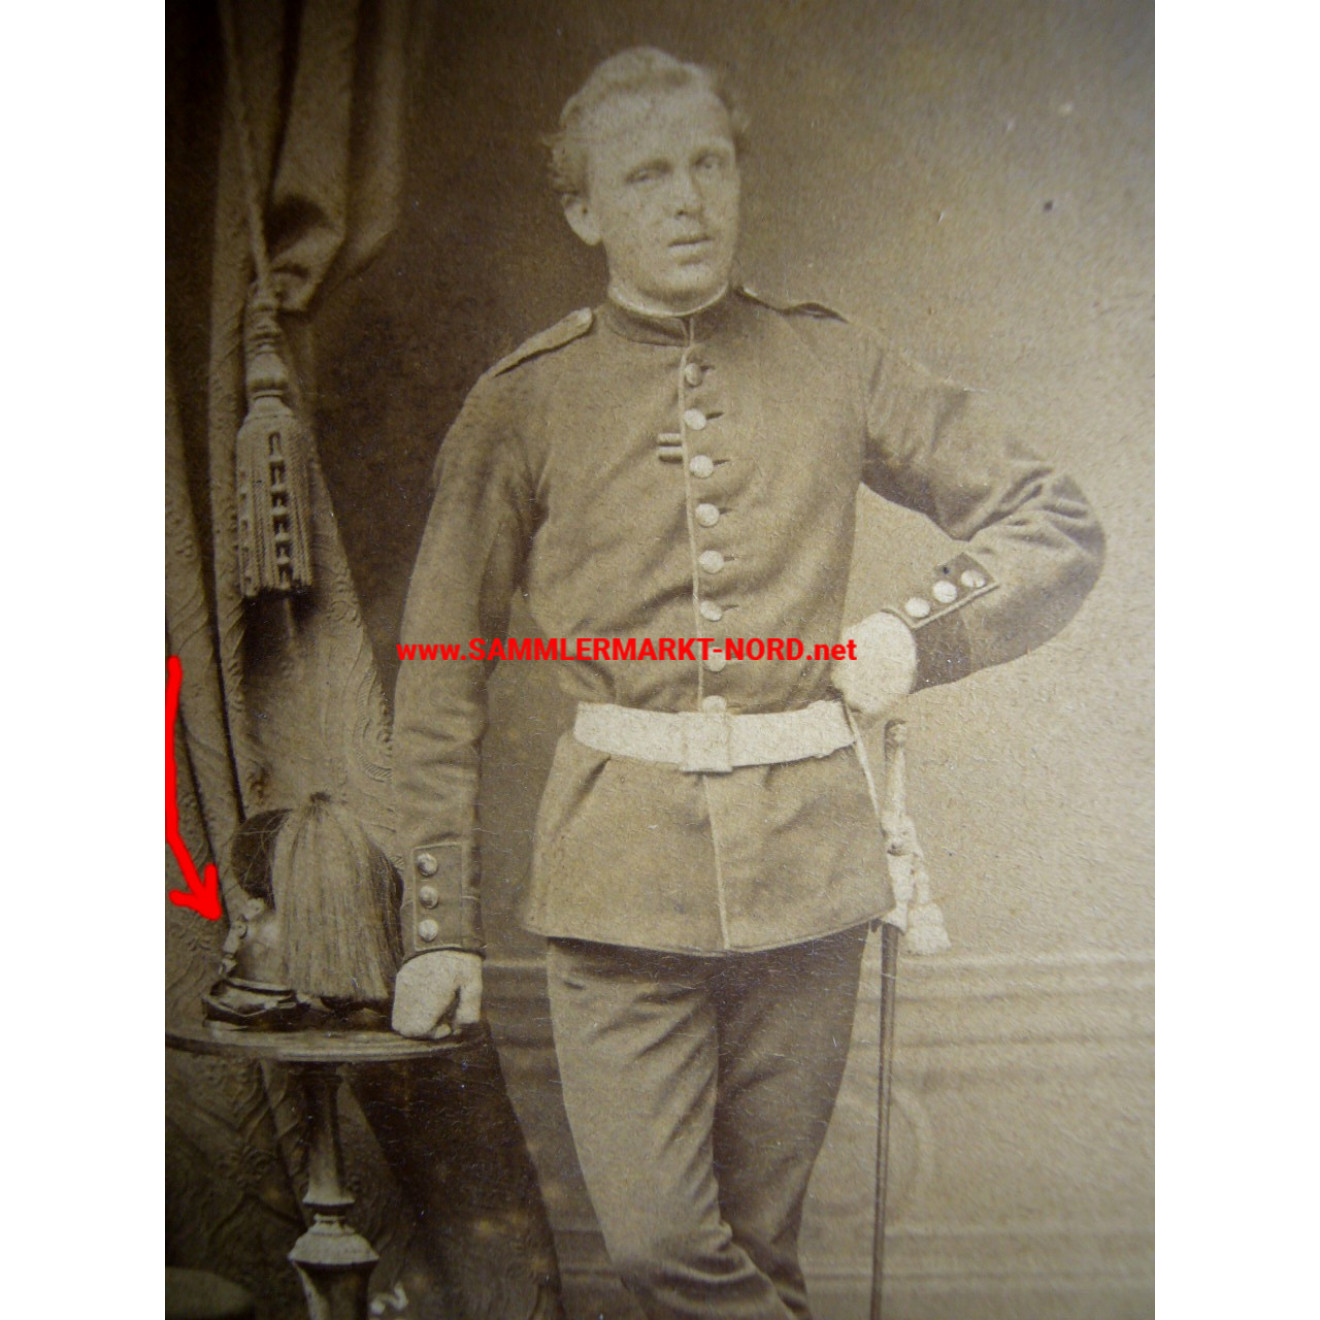 Kabinettfoto - Soldat des Königlich Bayerisches 1. Schwere-Reiter-Regiment „Prinz Karl von Bayern“ mit Raupenhelm